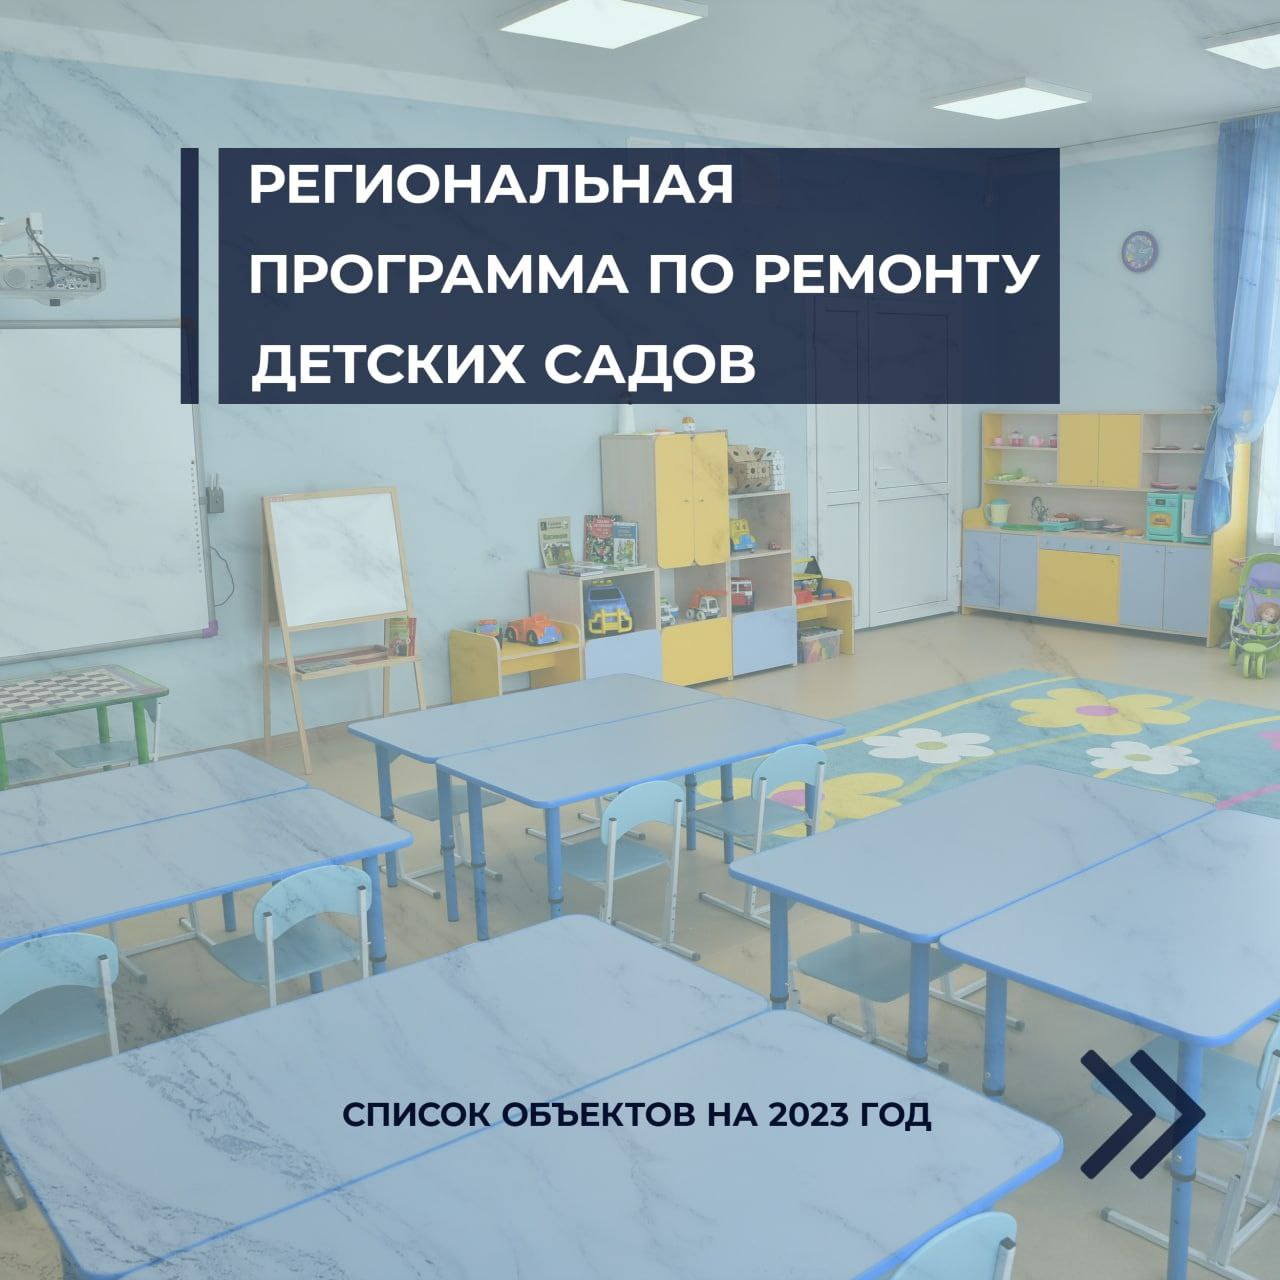 Сформирован список 100 детских садов, которые в 2023 году будут участвовать в региональной программе ремонта..